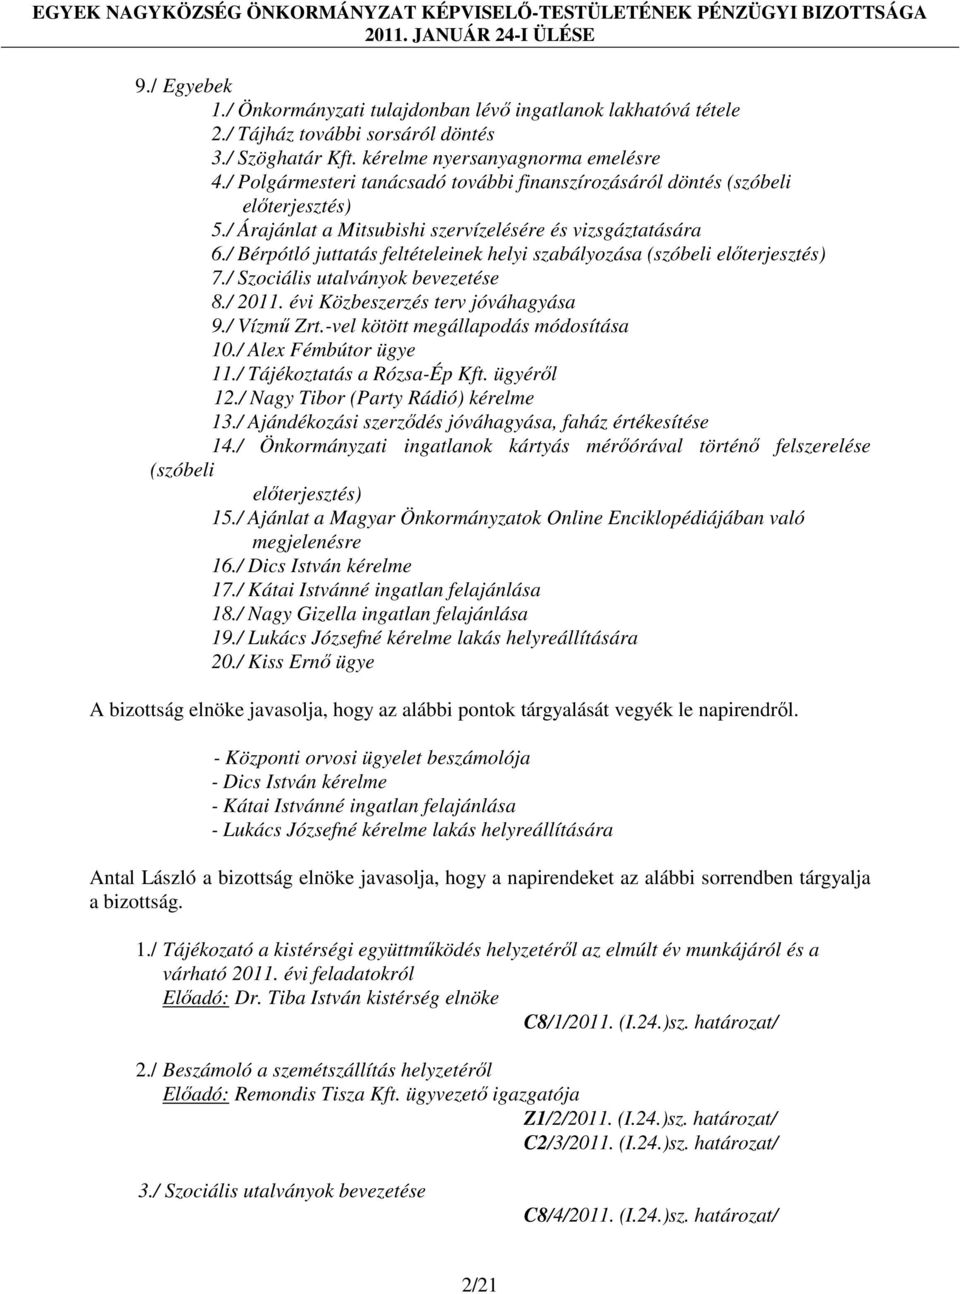 / Bérpótló juttatás feltételeinek helyi szabályozása (szóbeli előterjesztés) 7./ Szociális utalványok bevezetése 8./ 2011. évi Közbeszerzés terv jóváhagyása 9./ Vízmű Zrt.